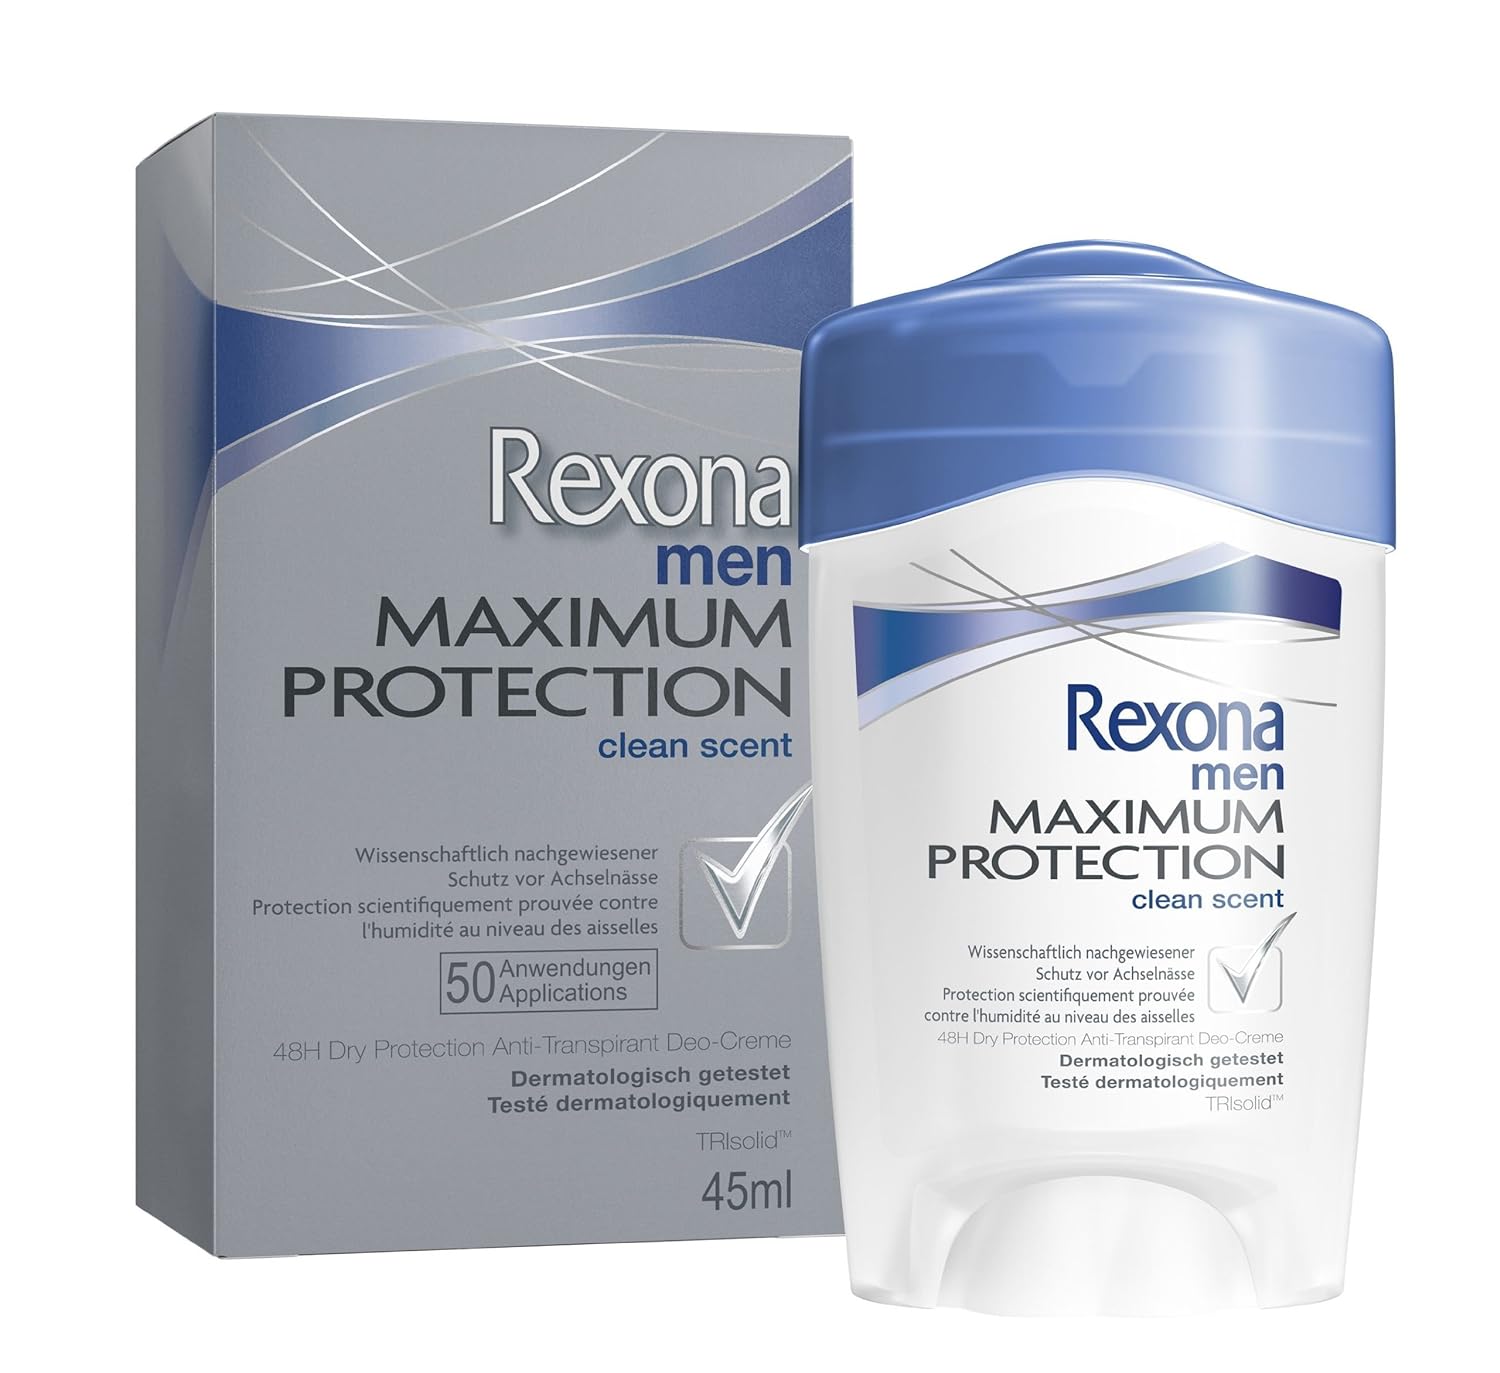 Rexona Maximum Protection Clean Scent